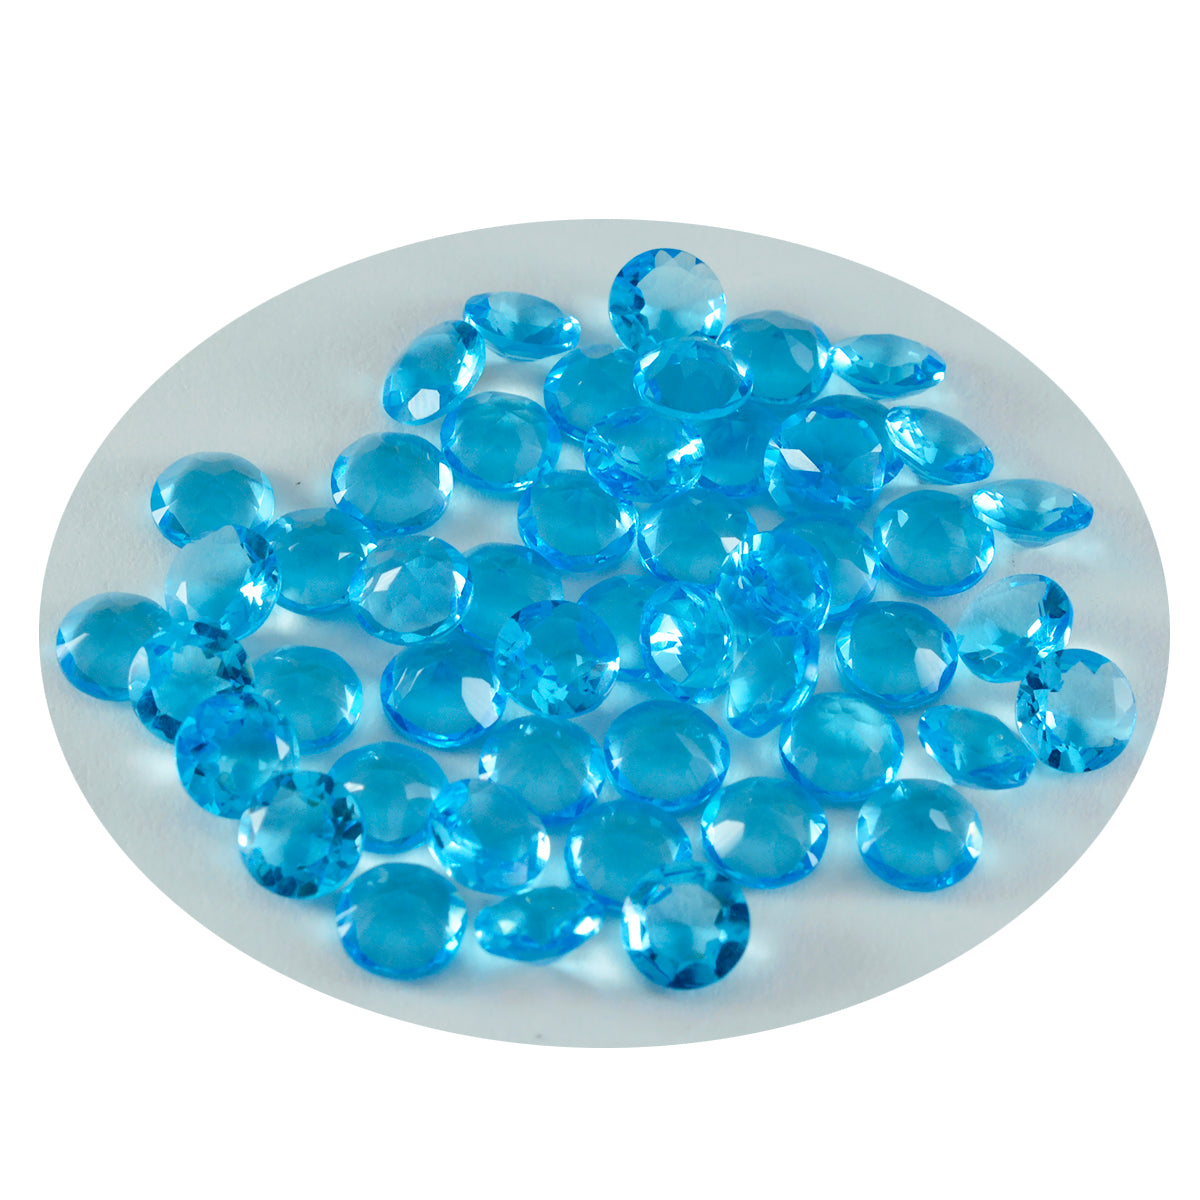 riyogems 1шт синий топаз cz ограненный 4x4 мм драгоценный камень круглой формы превосходного качества